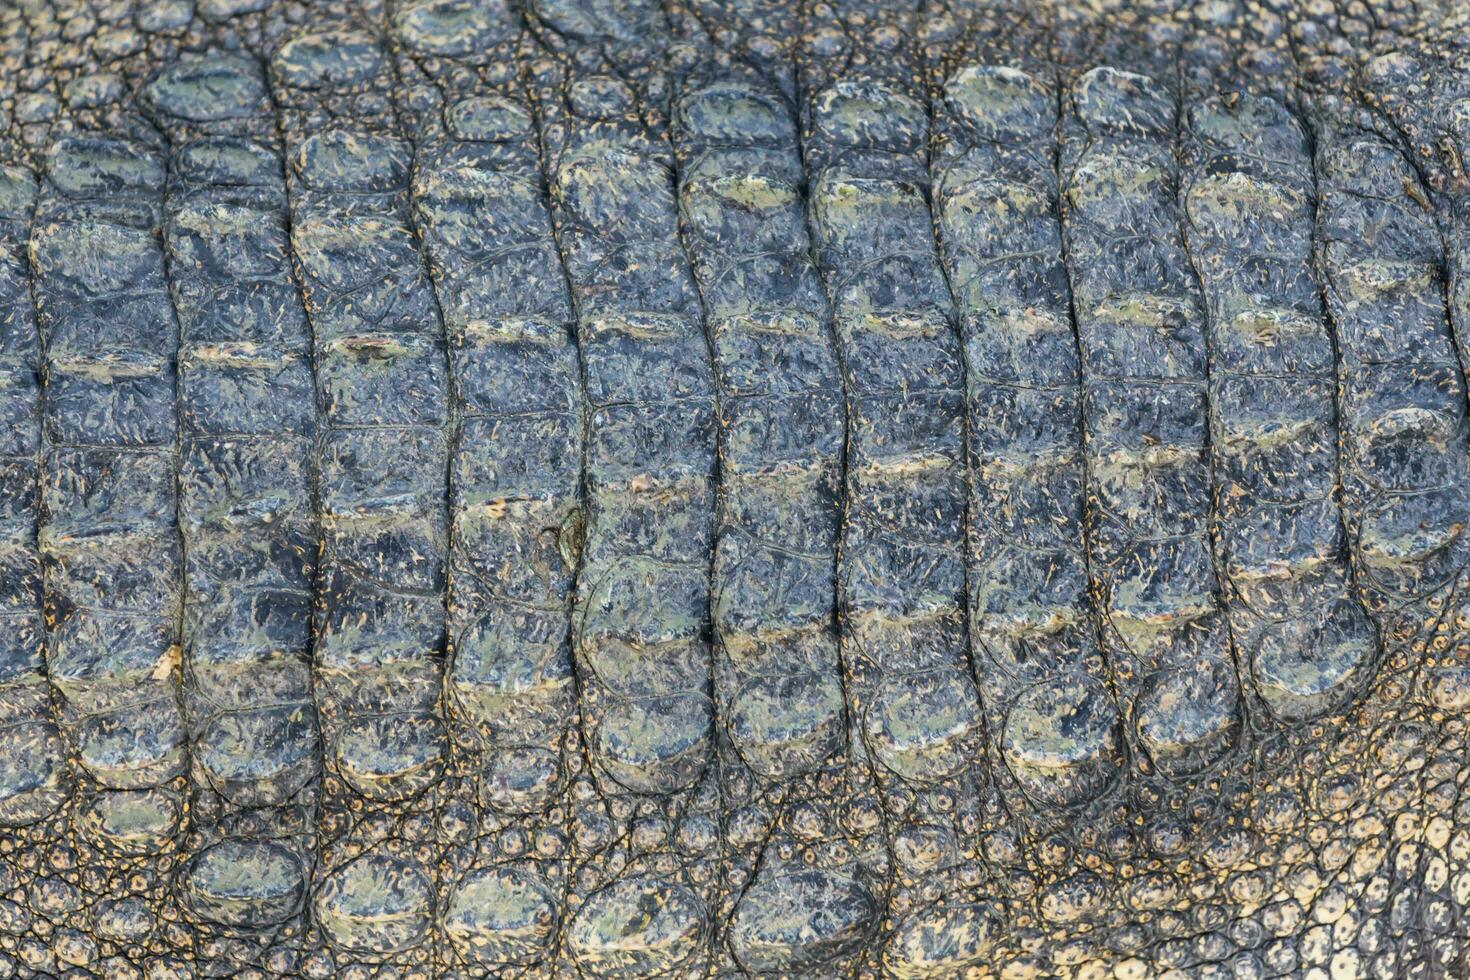 Crocodile skin texture background photo